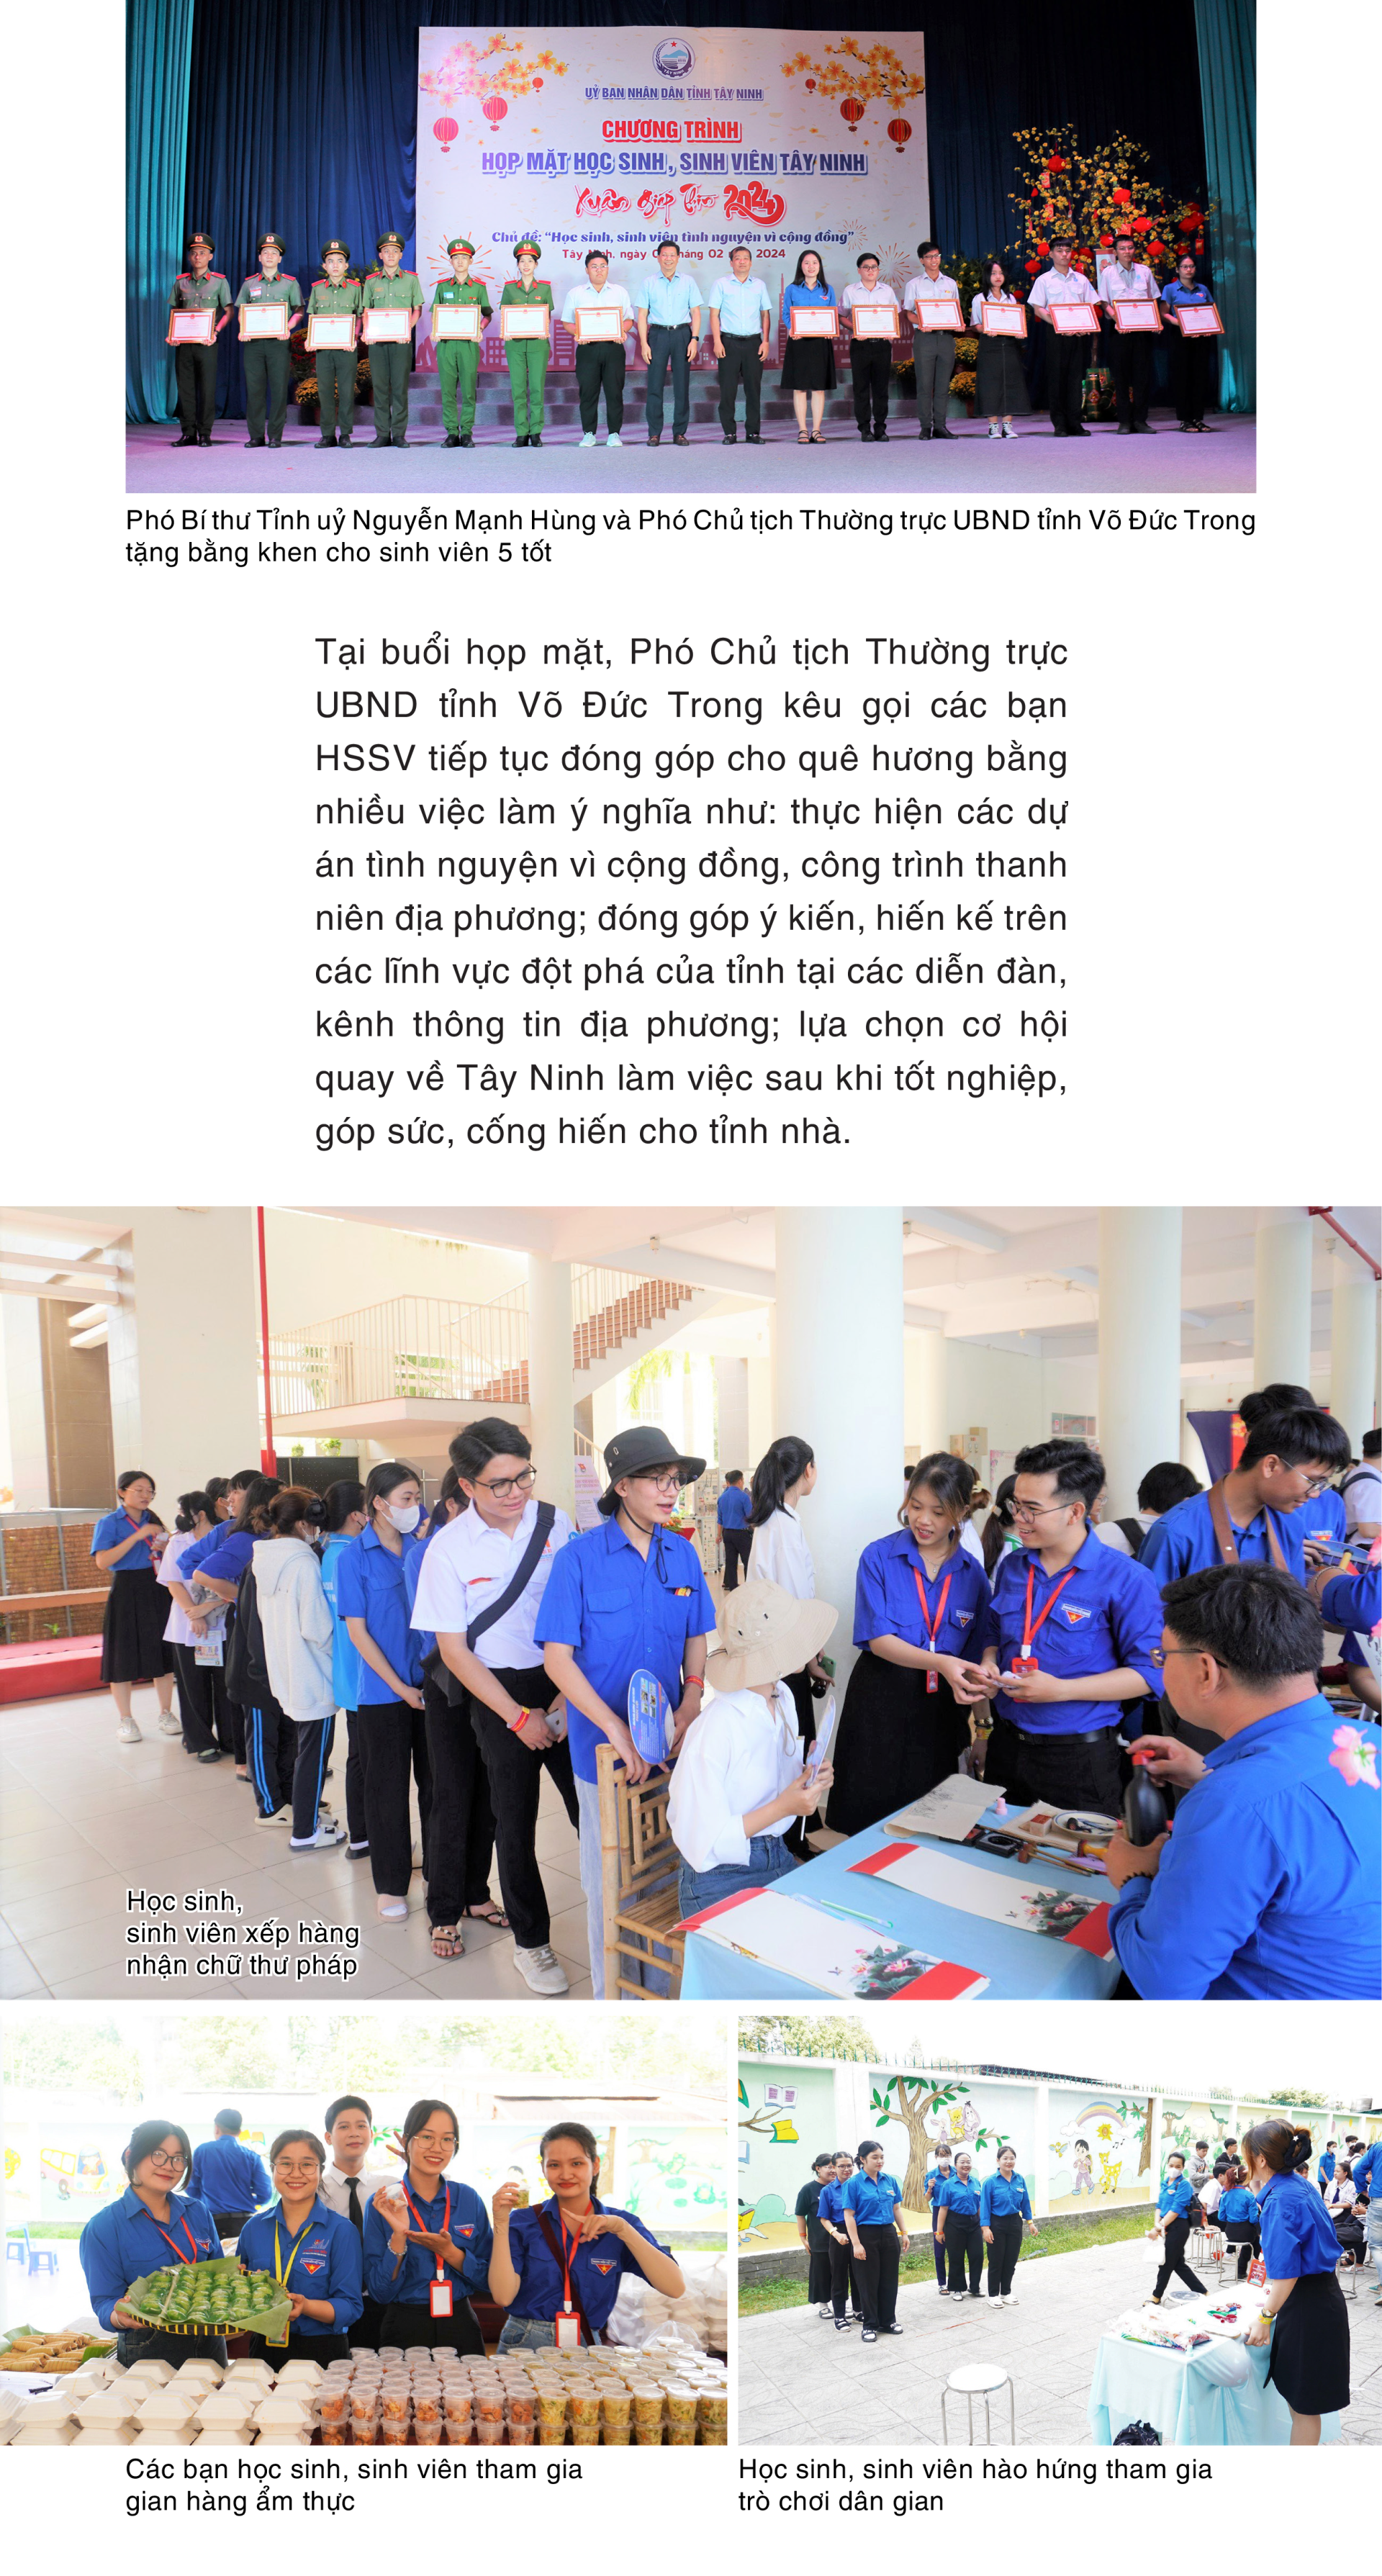 Tây Ninh họp mặt học sinh, sinh viên Xuân Giáp Thìn năm 2024